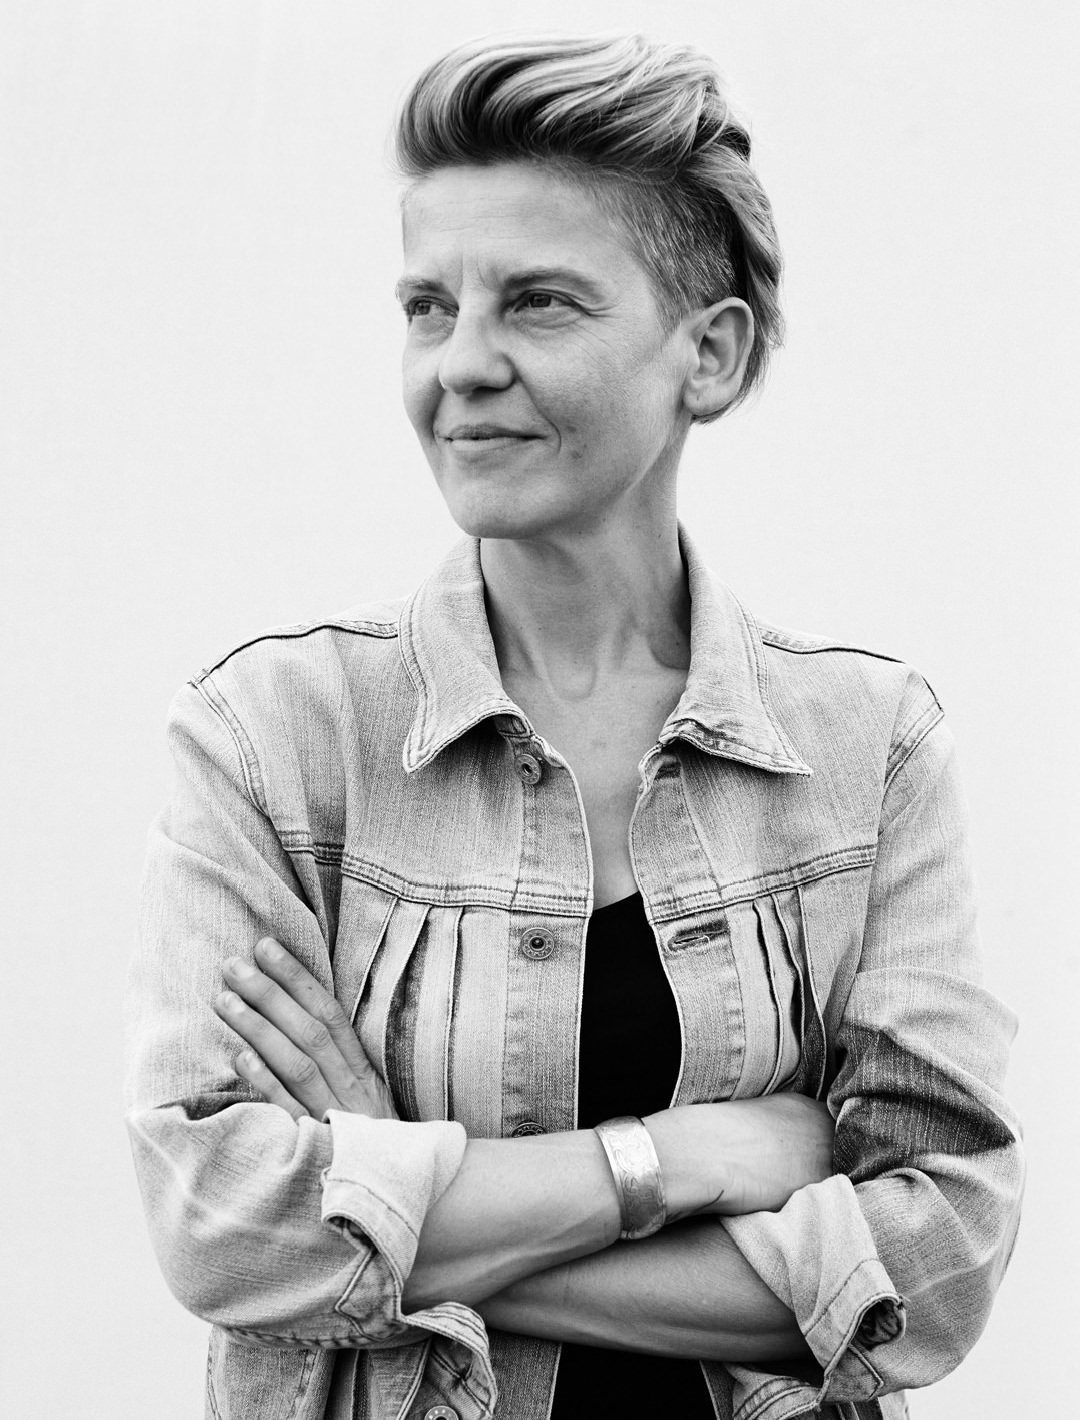 Anita Steinwidder